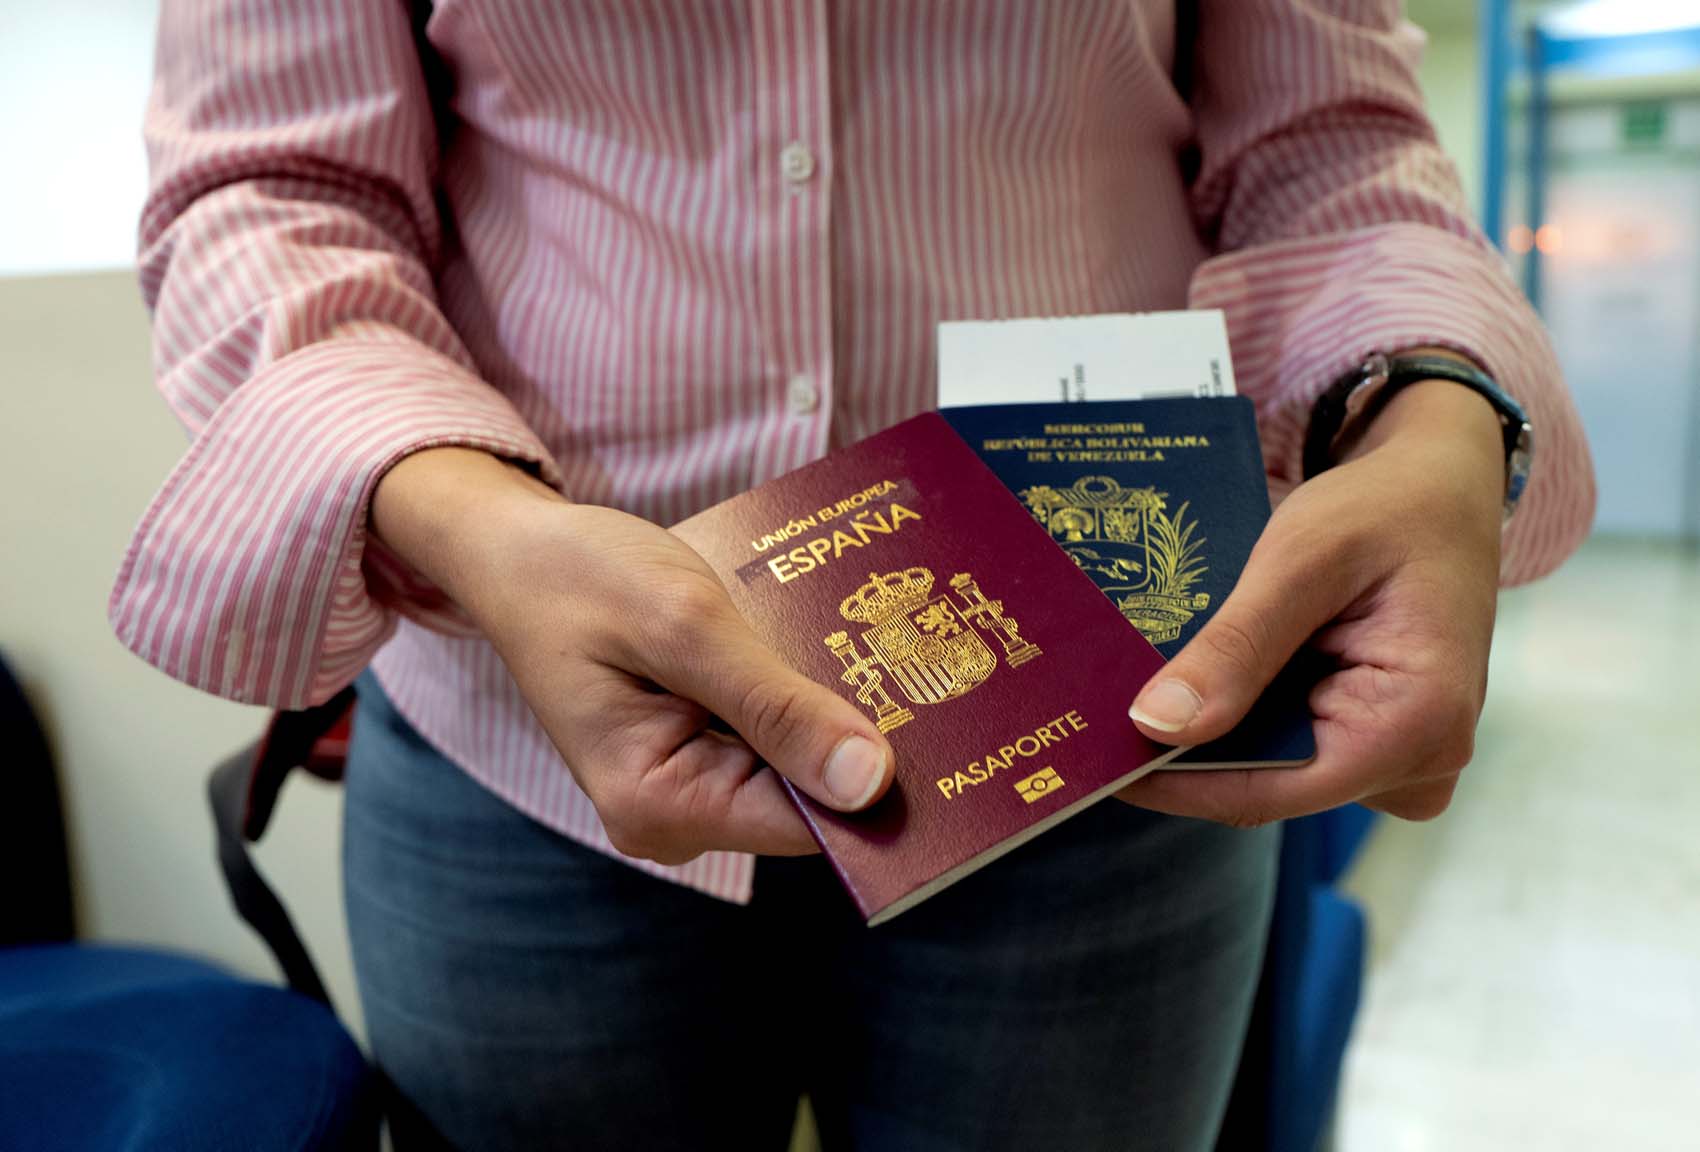 Chile aceptará pasaportes venezolanos vencidos a partir de 2019 (Resolución)